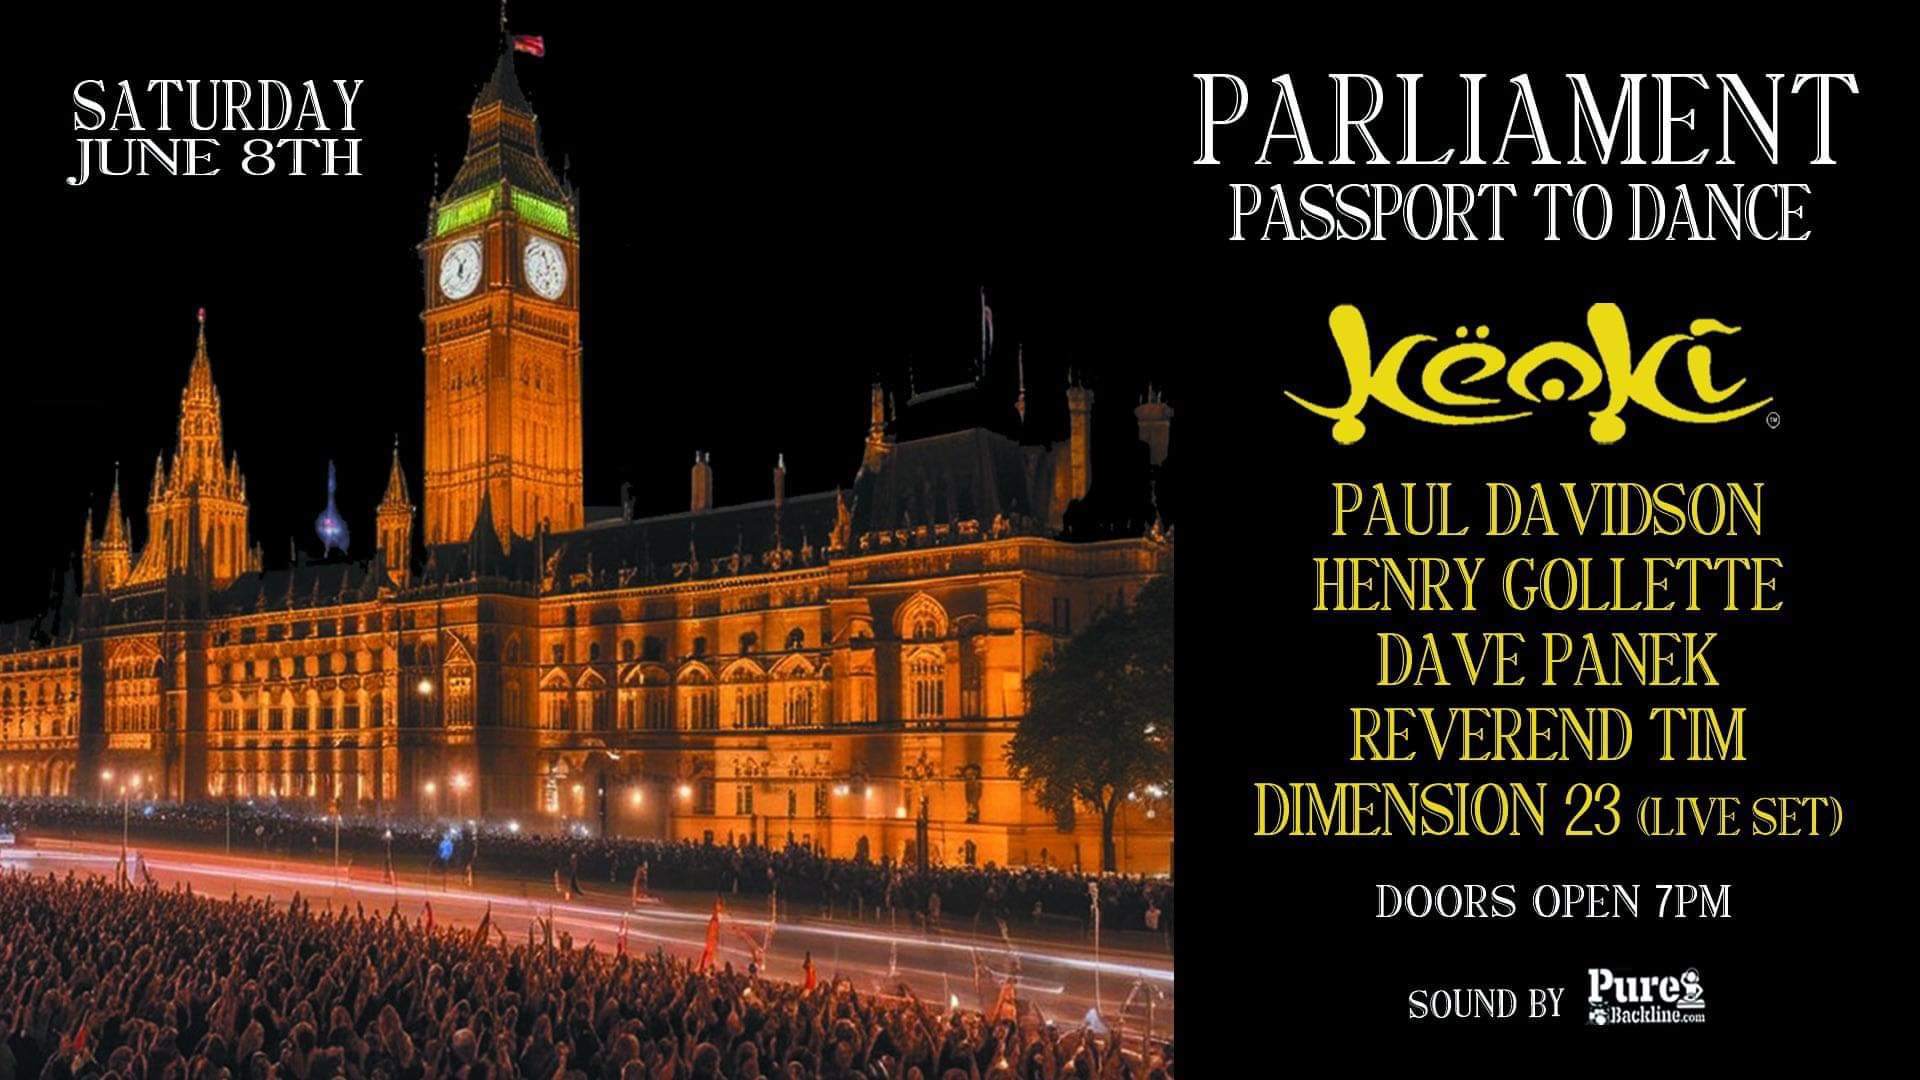 Parliament Passport to Dance - Página frontal